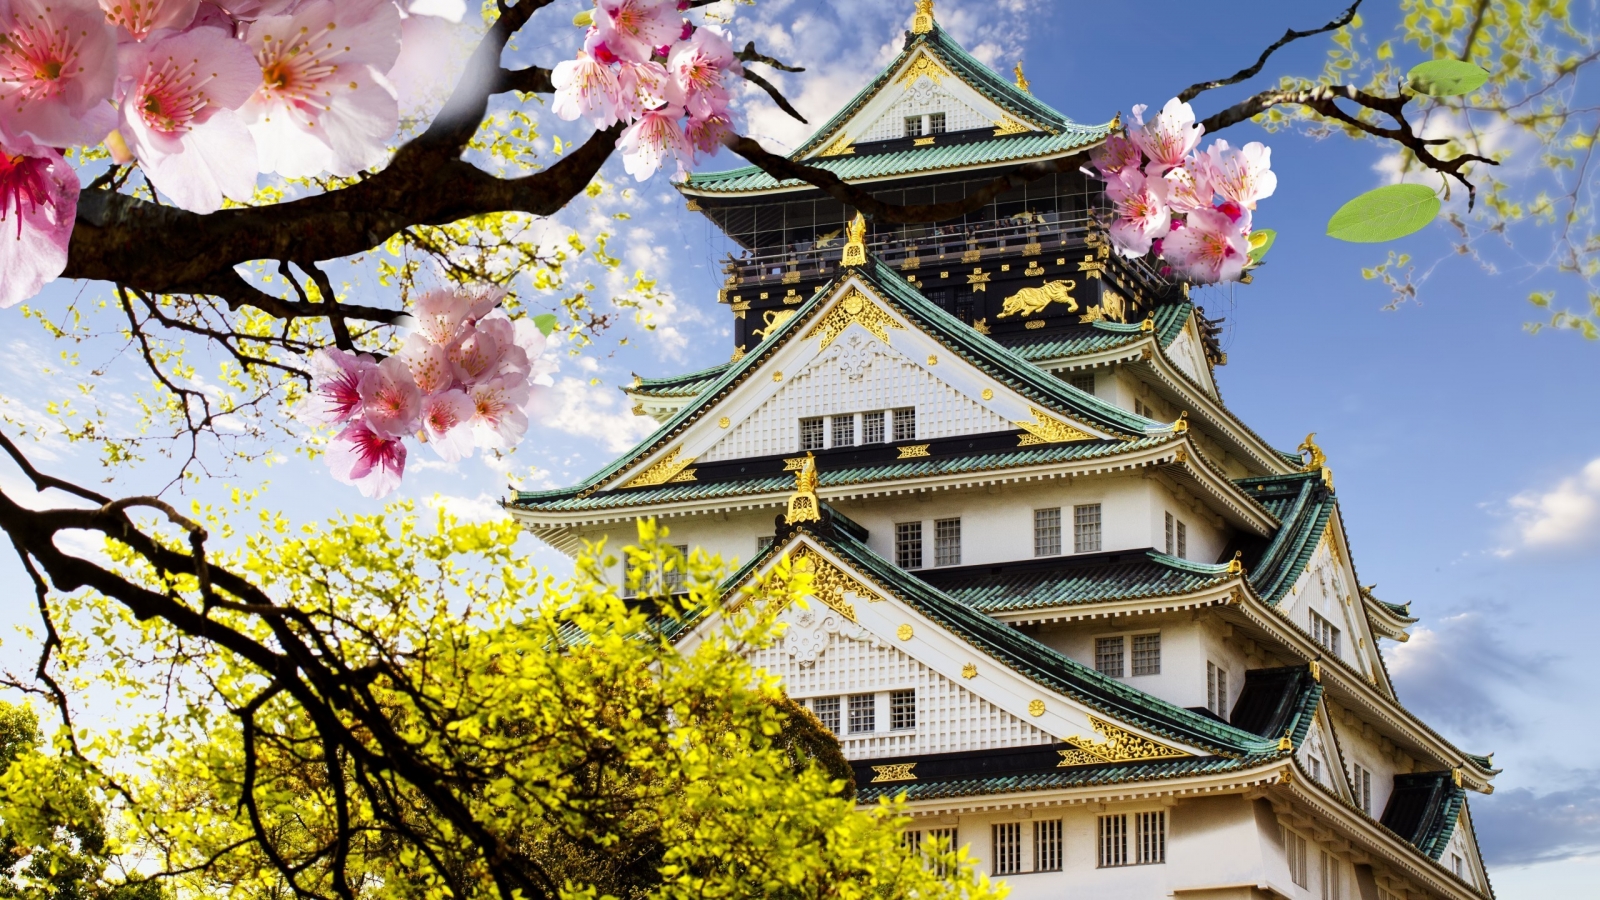 Japanese Castle for 1600 x 900 HDTV resolution